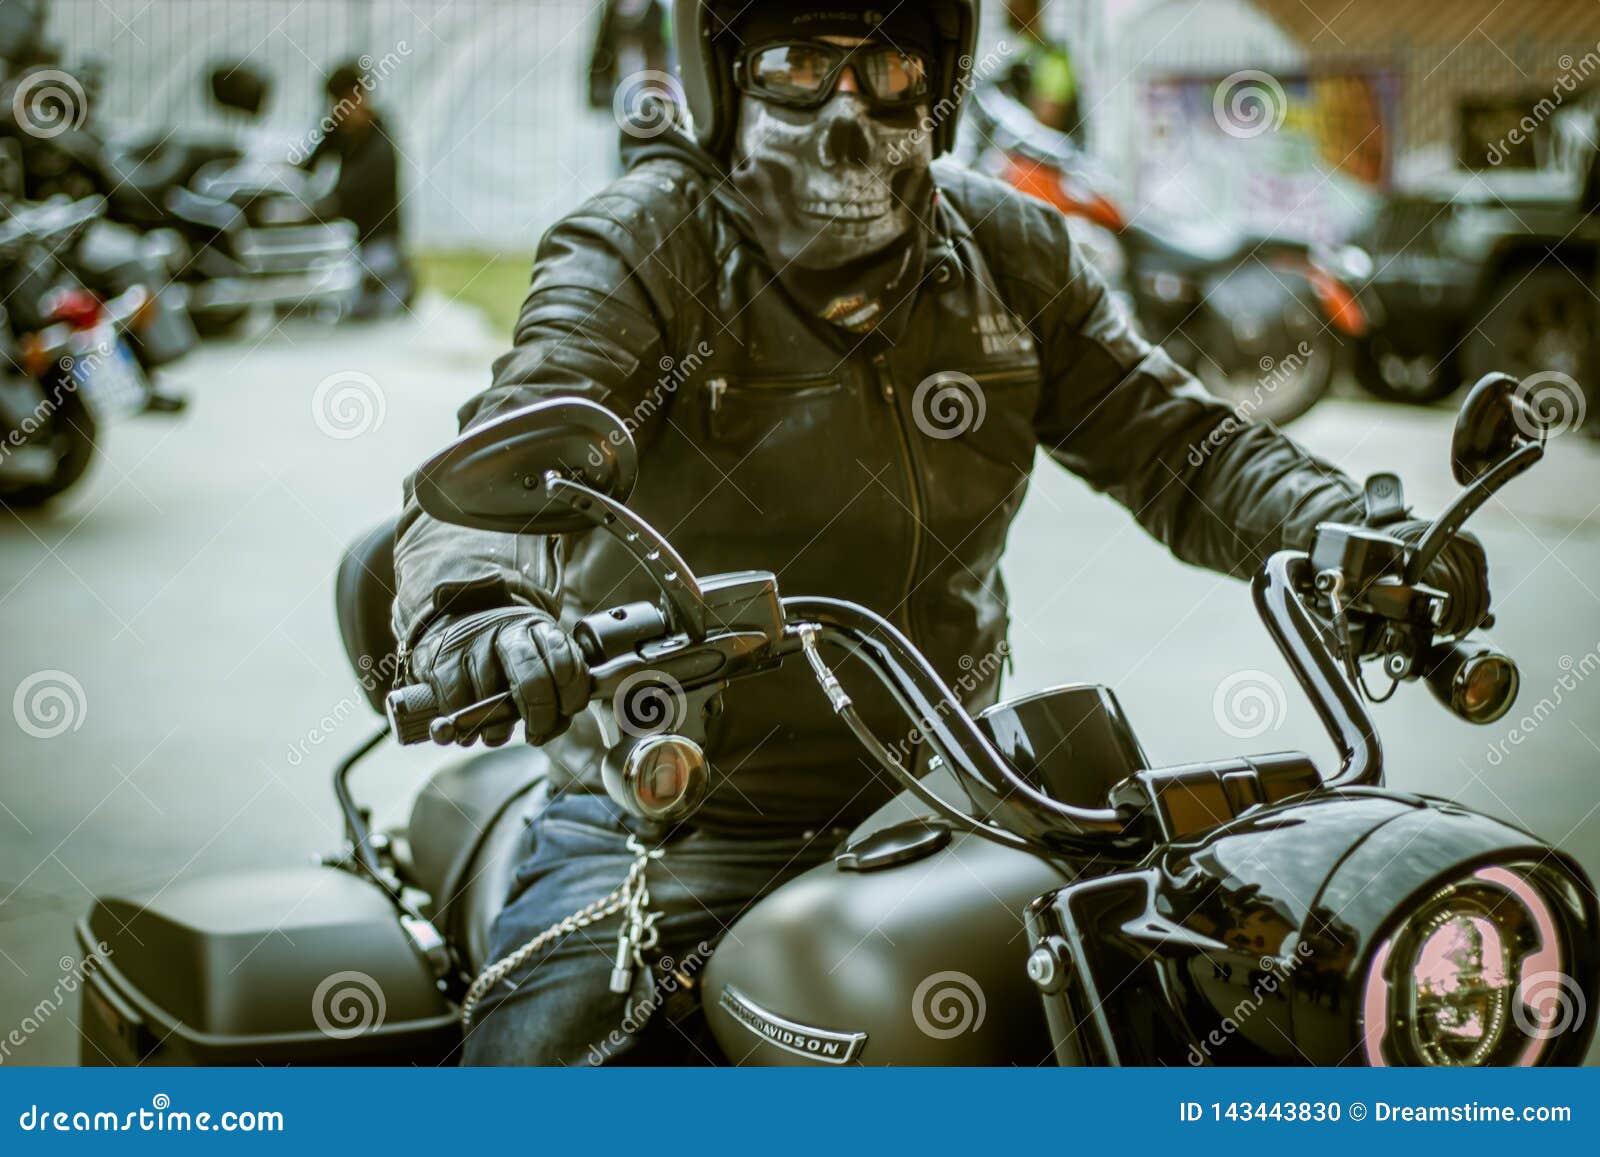 Harley Davidson Biker Rider With Skull Mask Editorial Image Image Of Helmet Mask 143443830